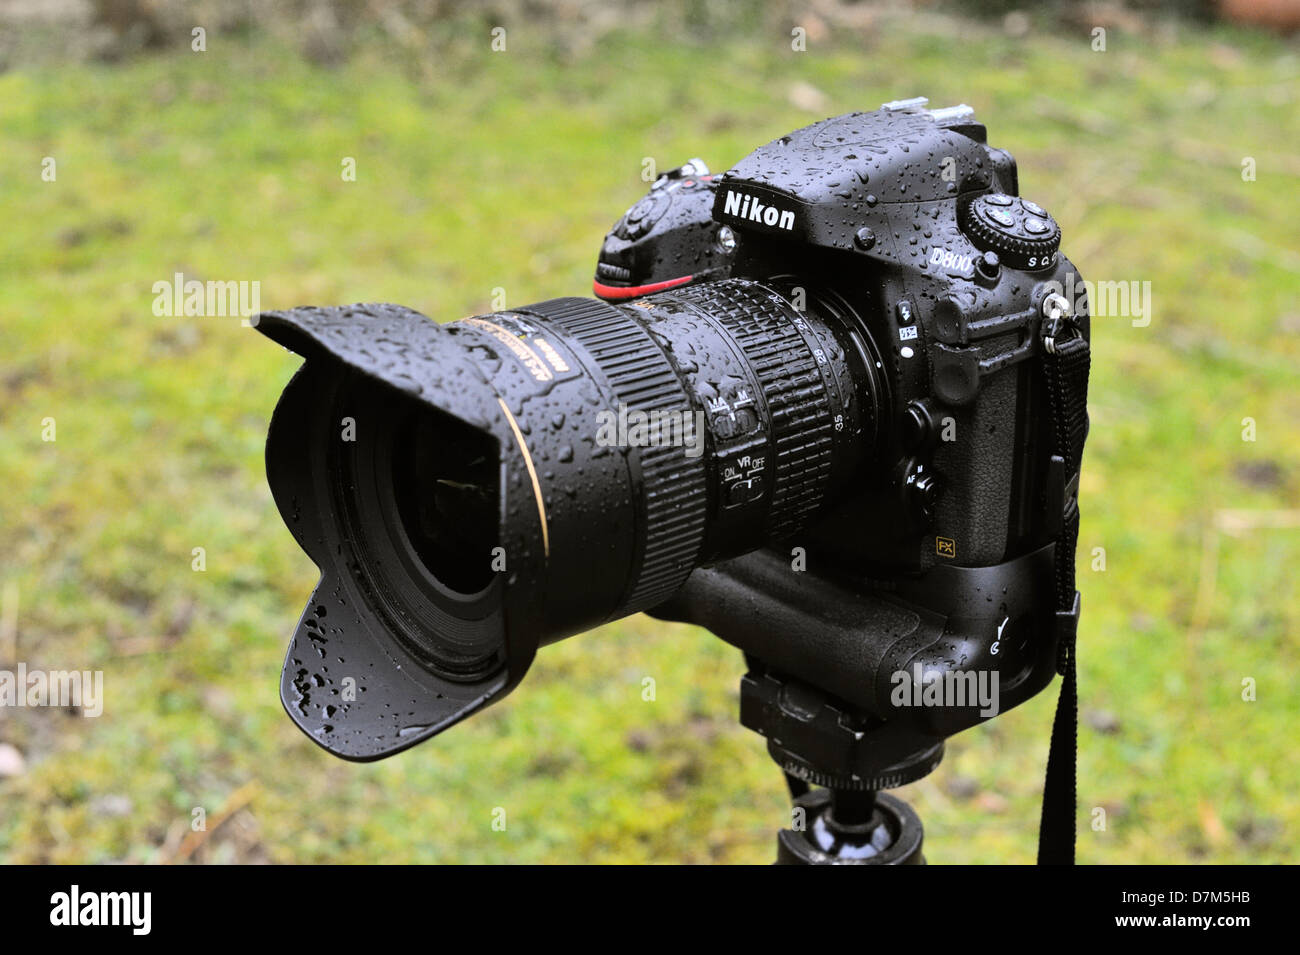 Nikon D800 digitale SLR-Kamera mit Batteriegriff MBD-12 und 16-35 f4 VR  Objektiv angebracht, triefend nass nach Exposition mit Starkregen  Stockfotografie - Alamy